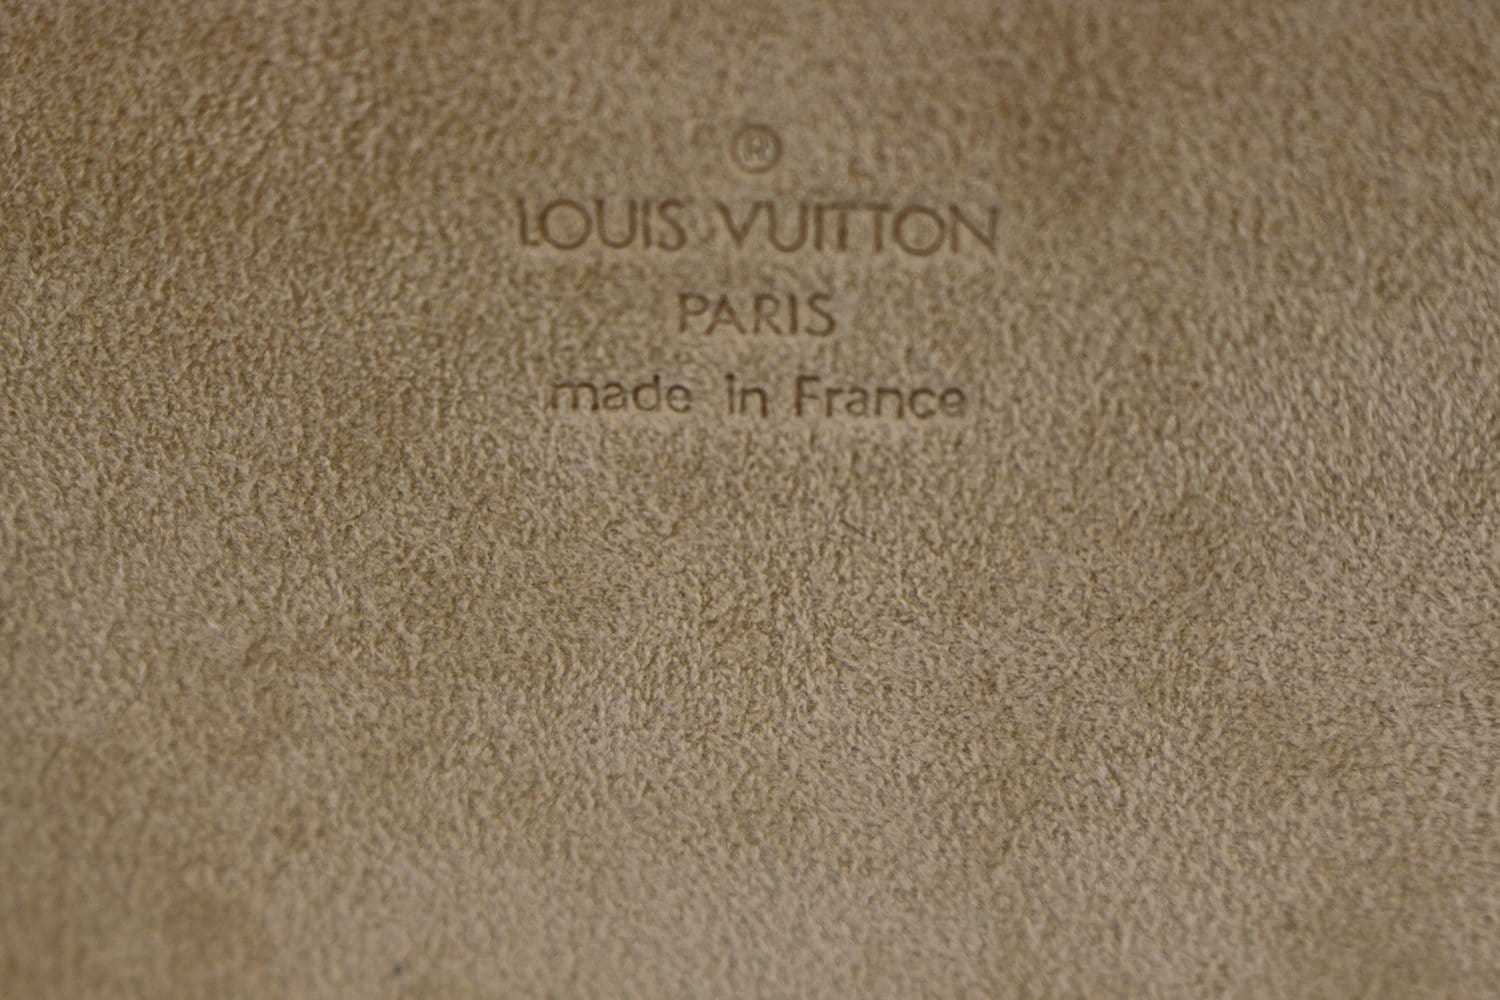 LOUIS VUITTON Monogram Monte Carlo PM Jewelry Case - 20% Off